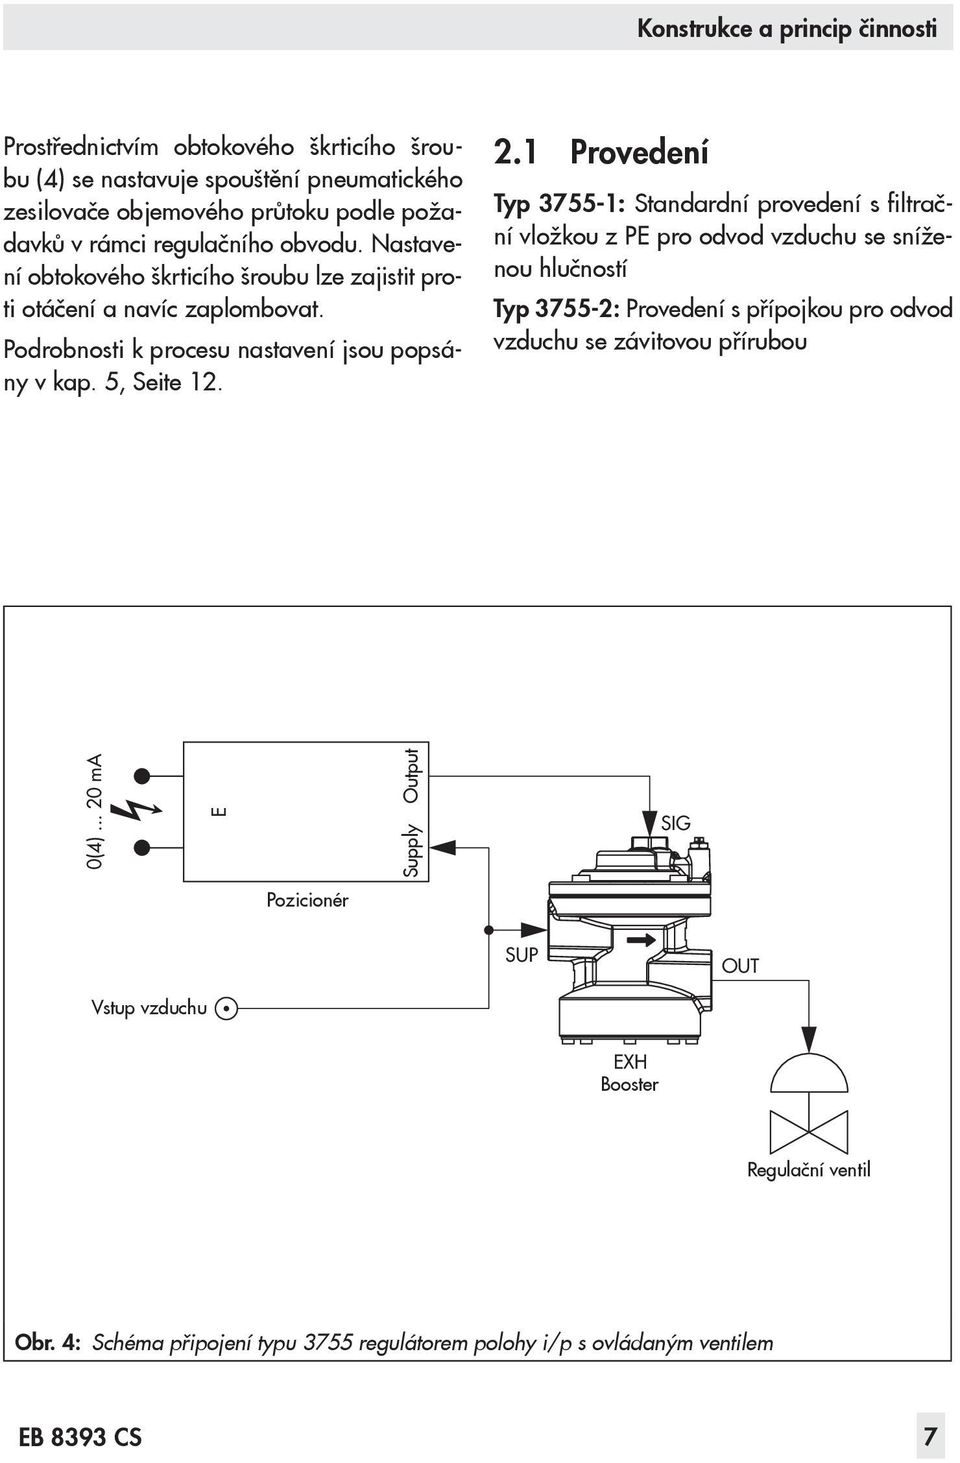 1 Provedení Typ 3755-1: Standardní provedení s filtrační vložkou z PE pro odvod vzduchu se sníženou hlučností Typ 3755-2: Provedení s přípojkou pro odvod vzduchu se závitovou